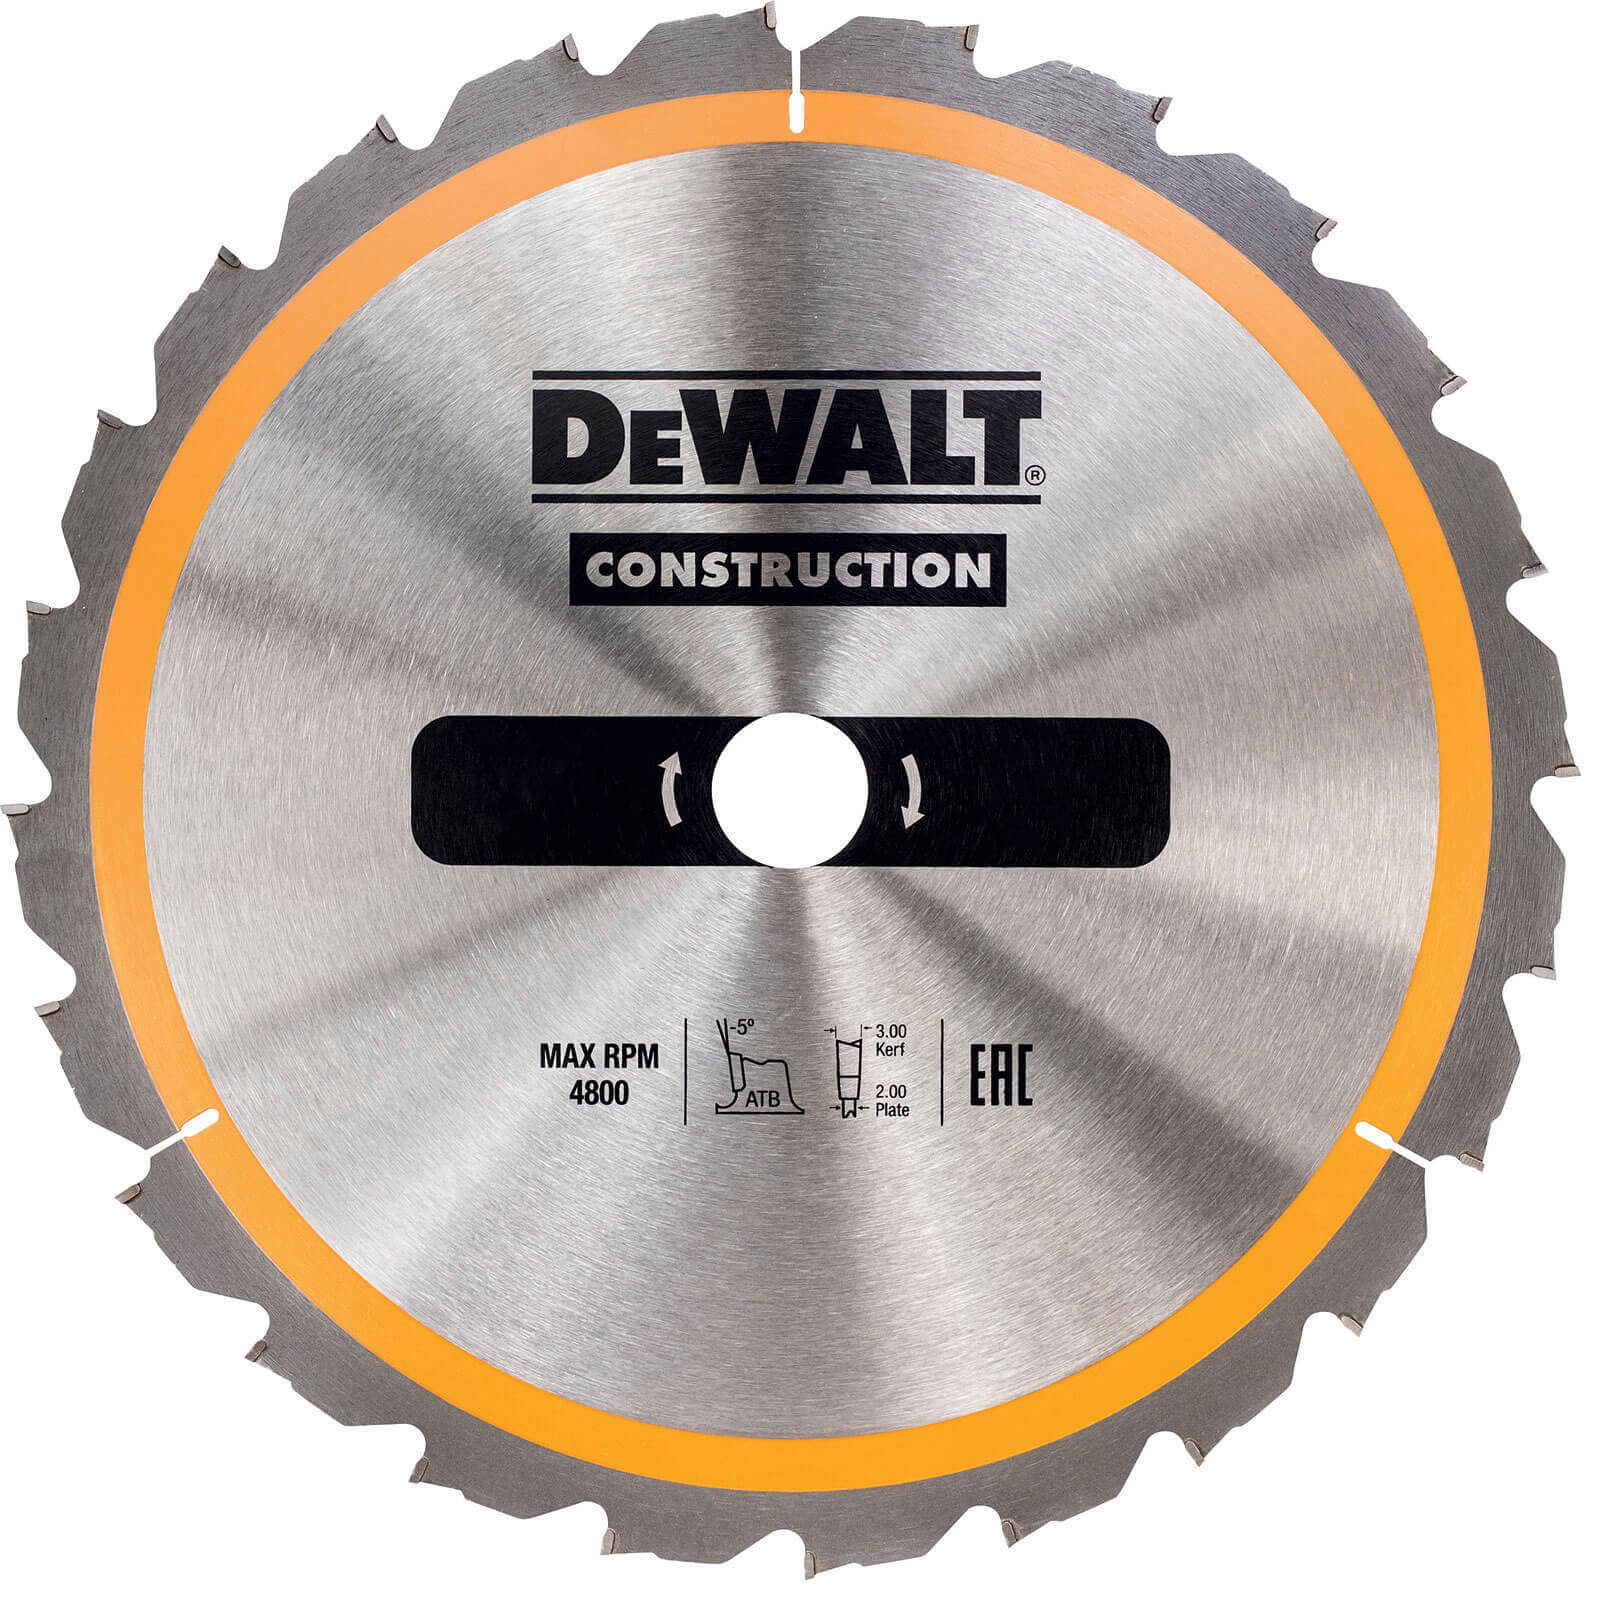 Photo of Dewalt Construction Circular Saw Blade 160mm 18t 20mm